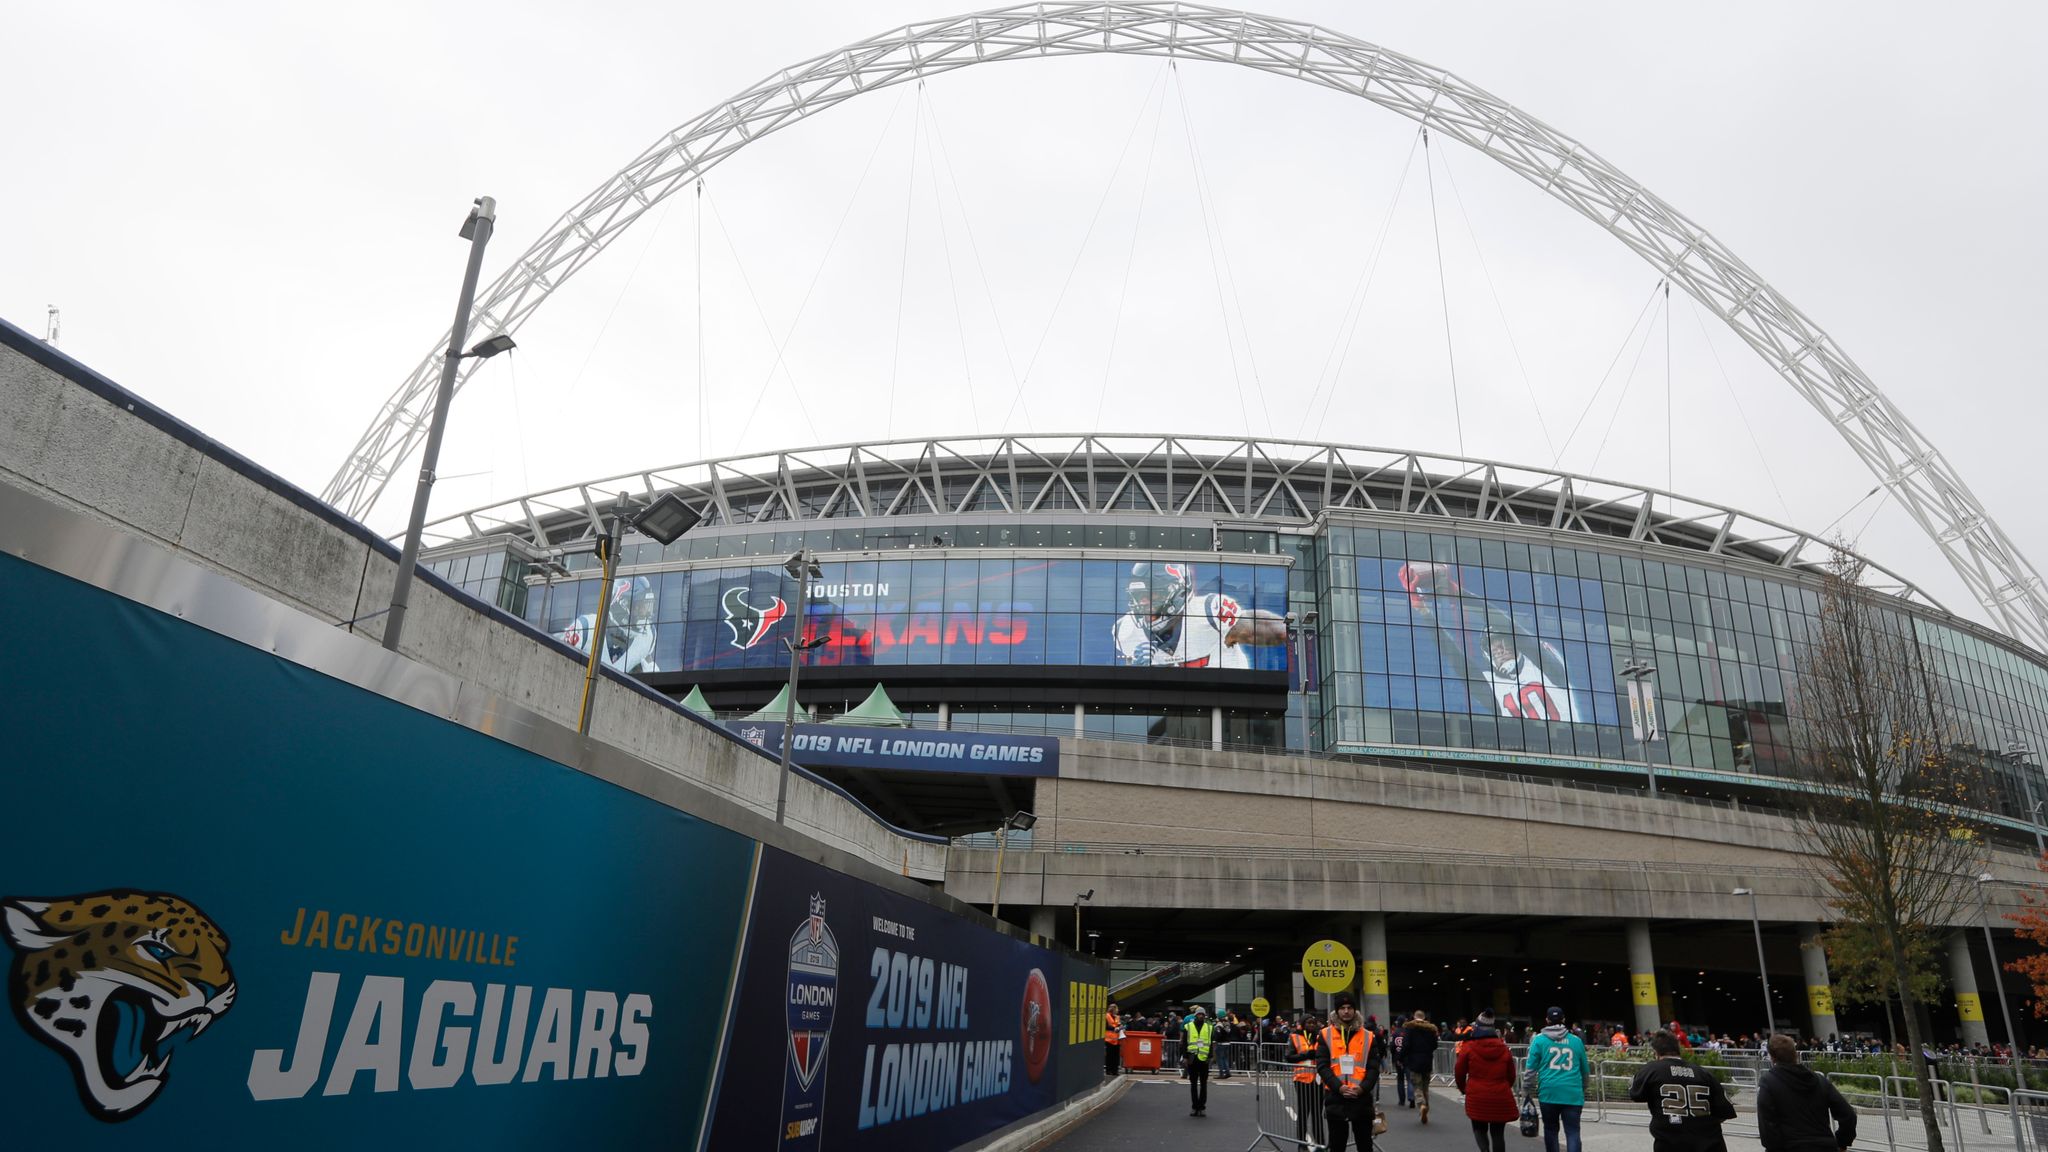 Jacksonville Jaguars confirm return to Wembley in 2022 NFL